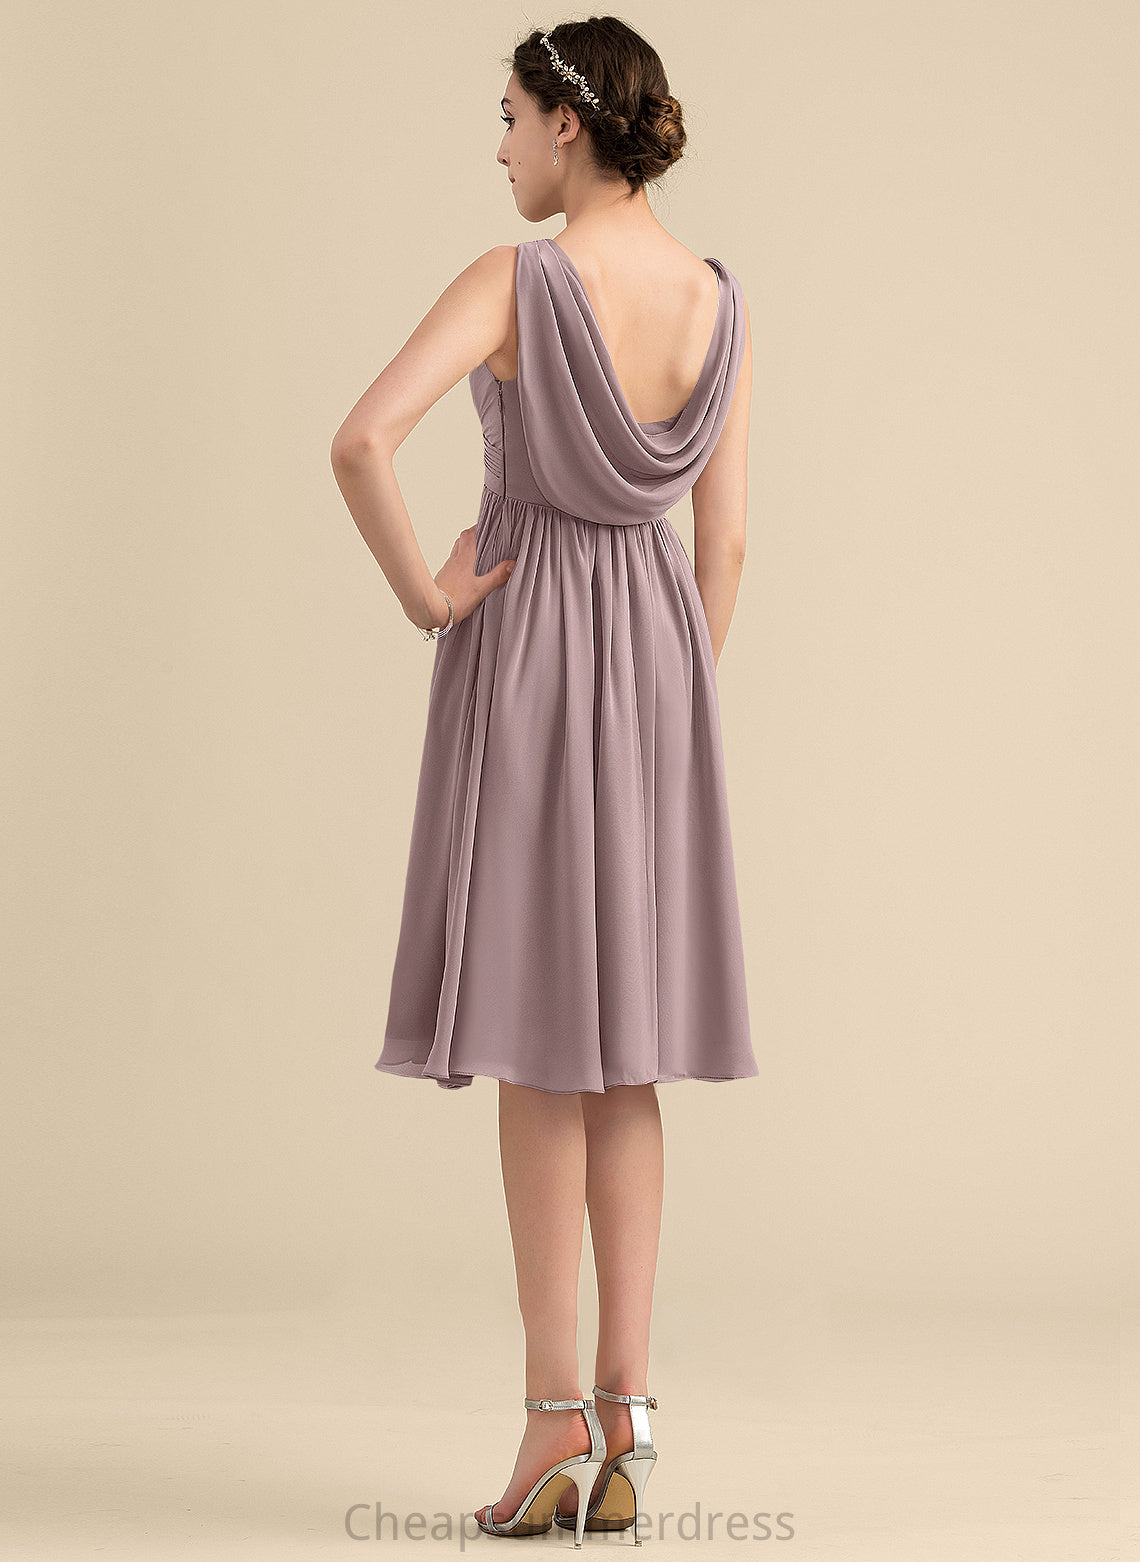 Neckline Fabric V-neck Embellishment Silhouette Length Knee-Length CascadingRuffles Empire Yareli A-Line/Princess Natural Waist